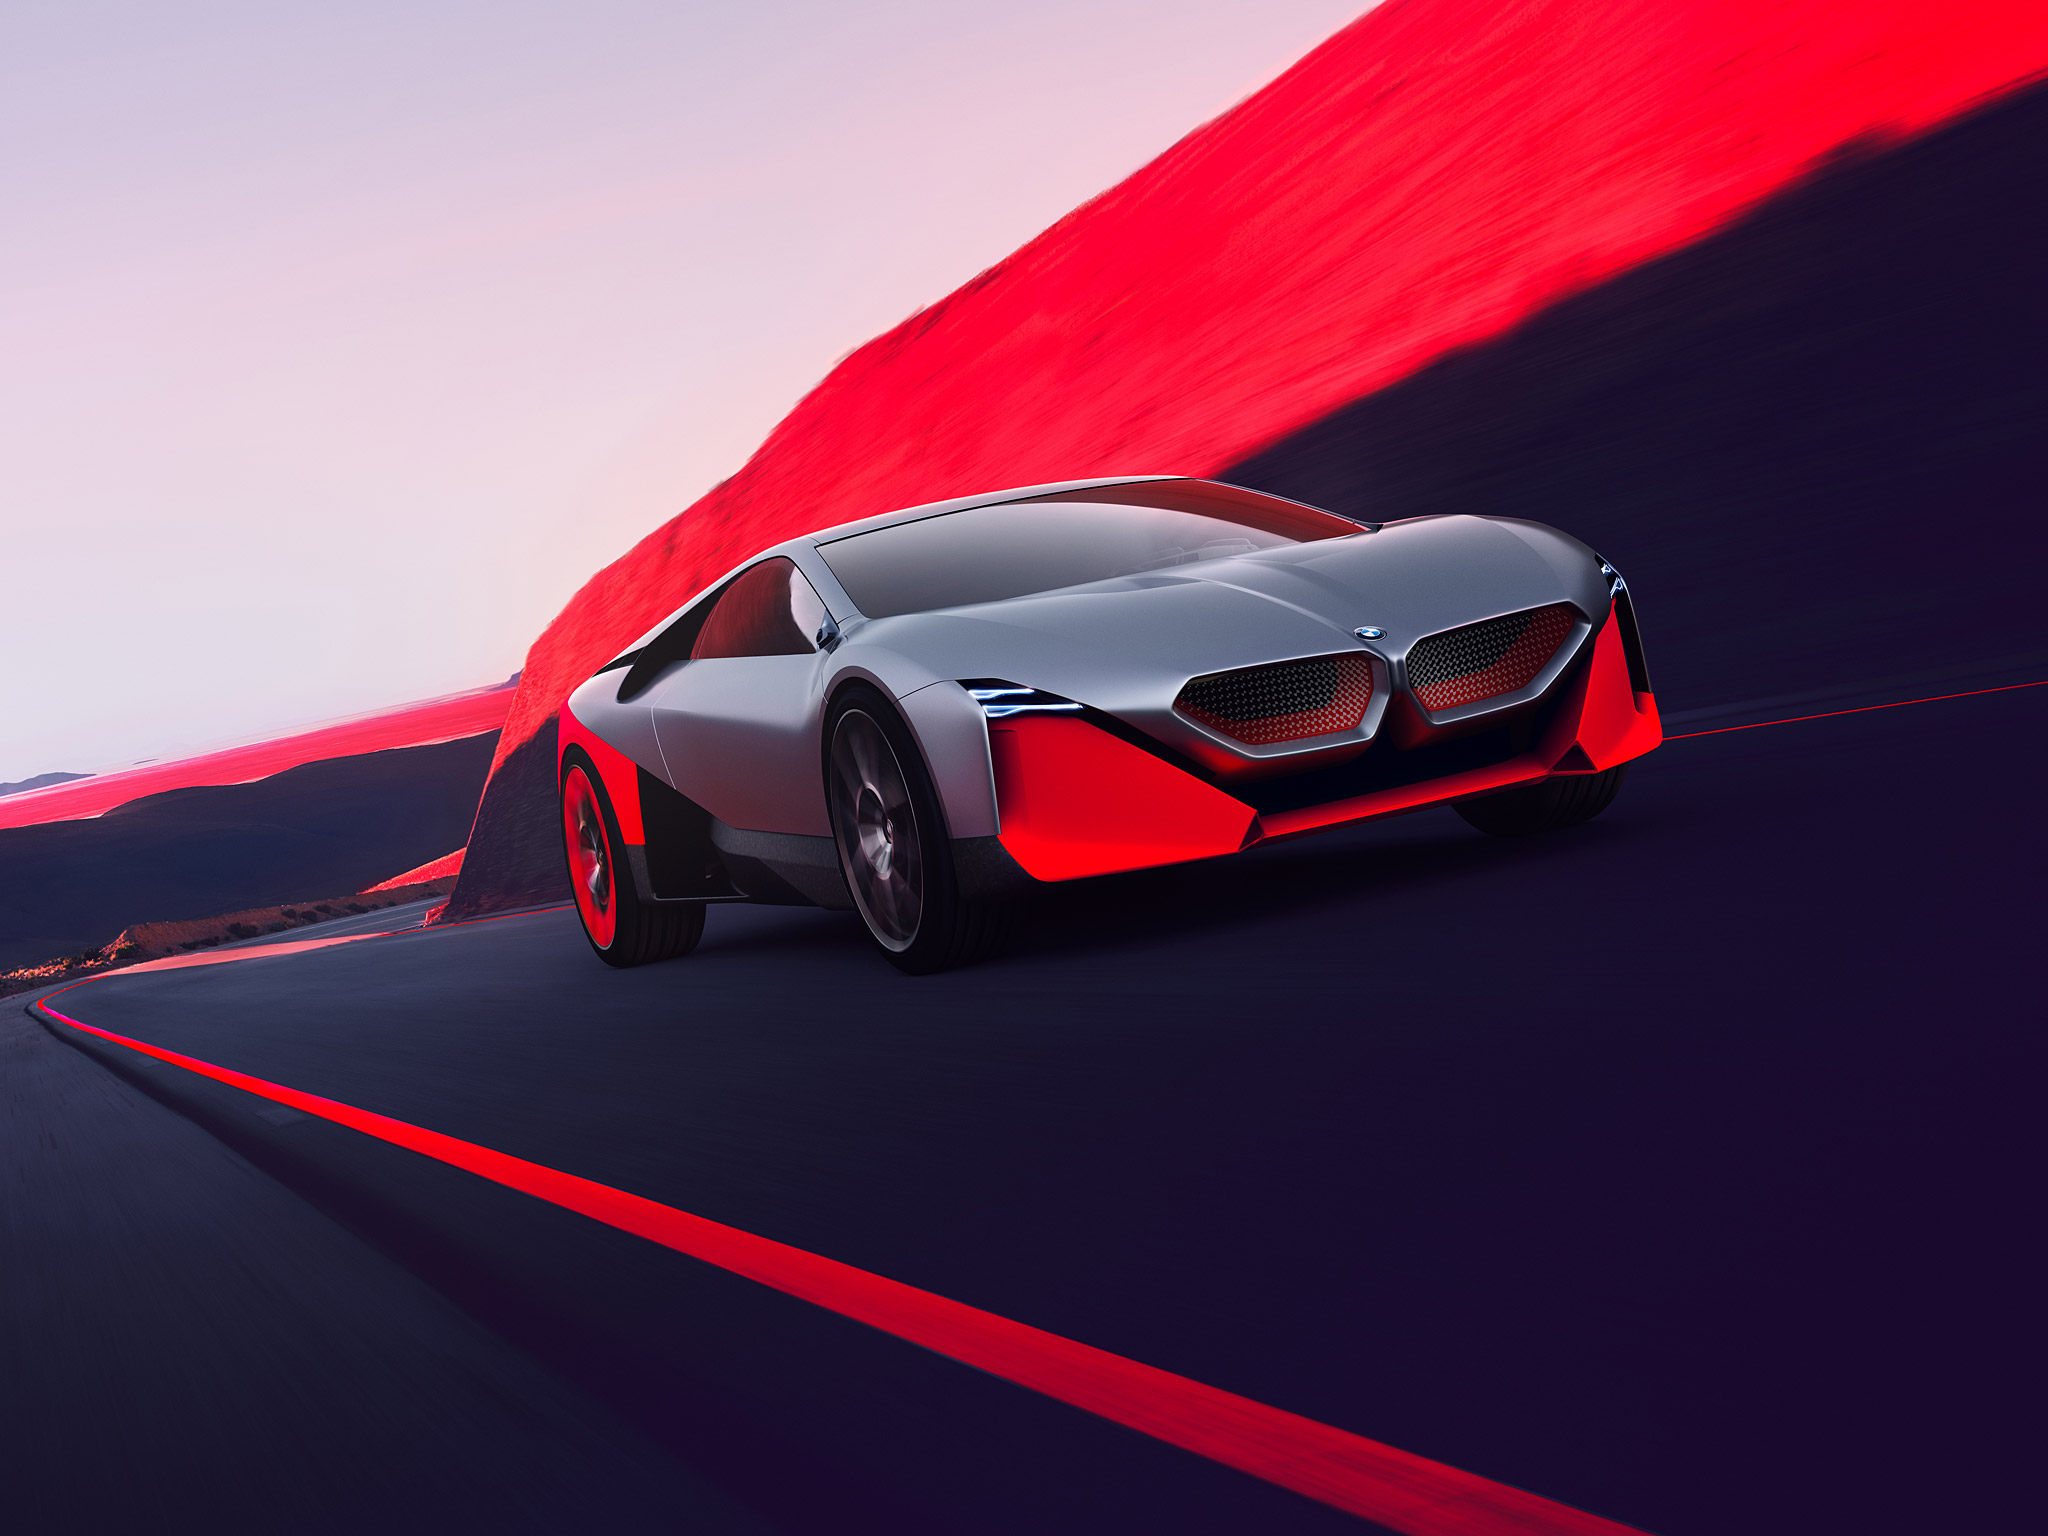  2019 BMW Vision M Next Concept Wallpaper.